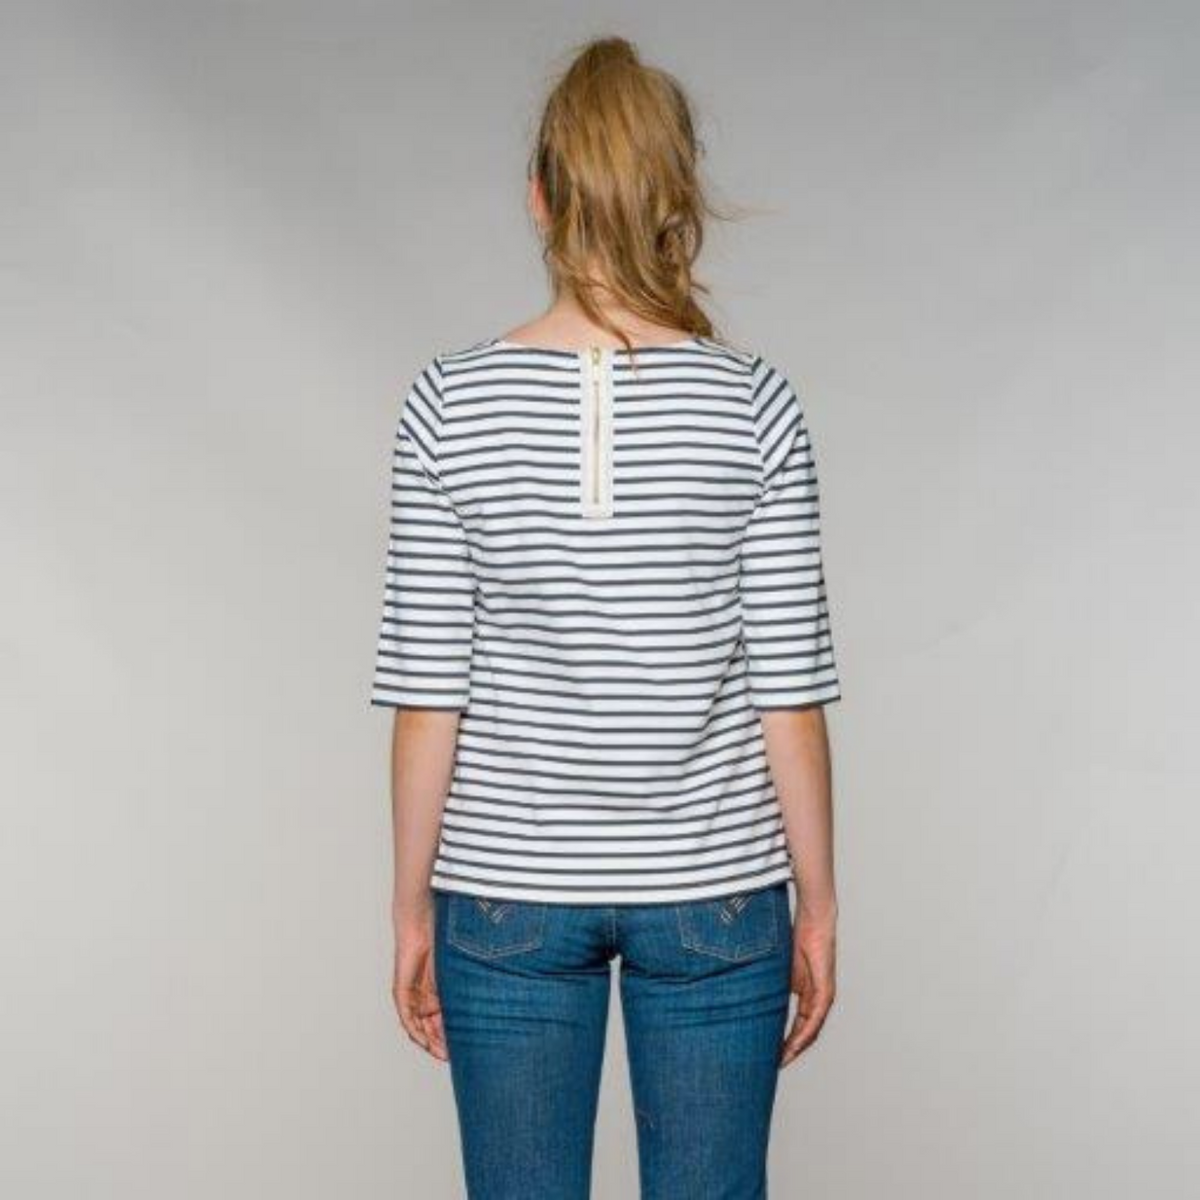 fv-Ali:na | Shirt | Round neck | ¾ sleeve | striped I feuervogl